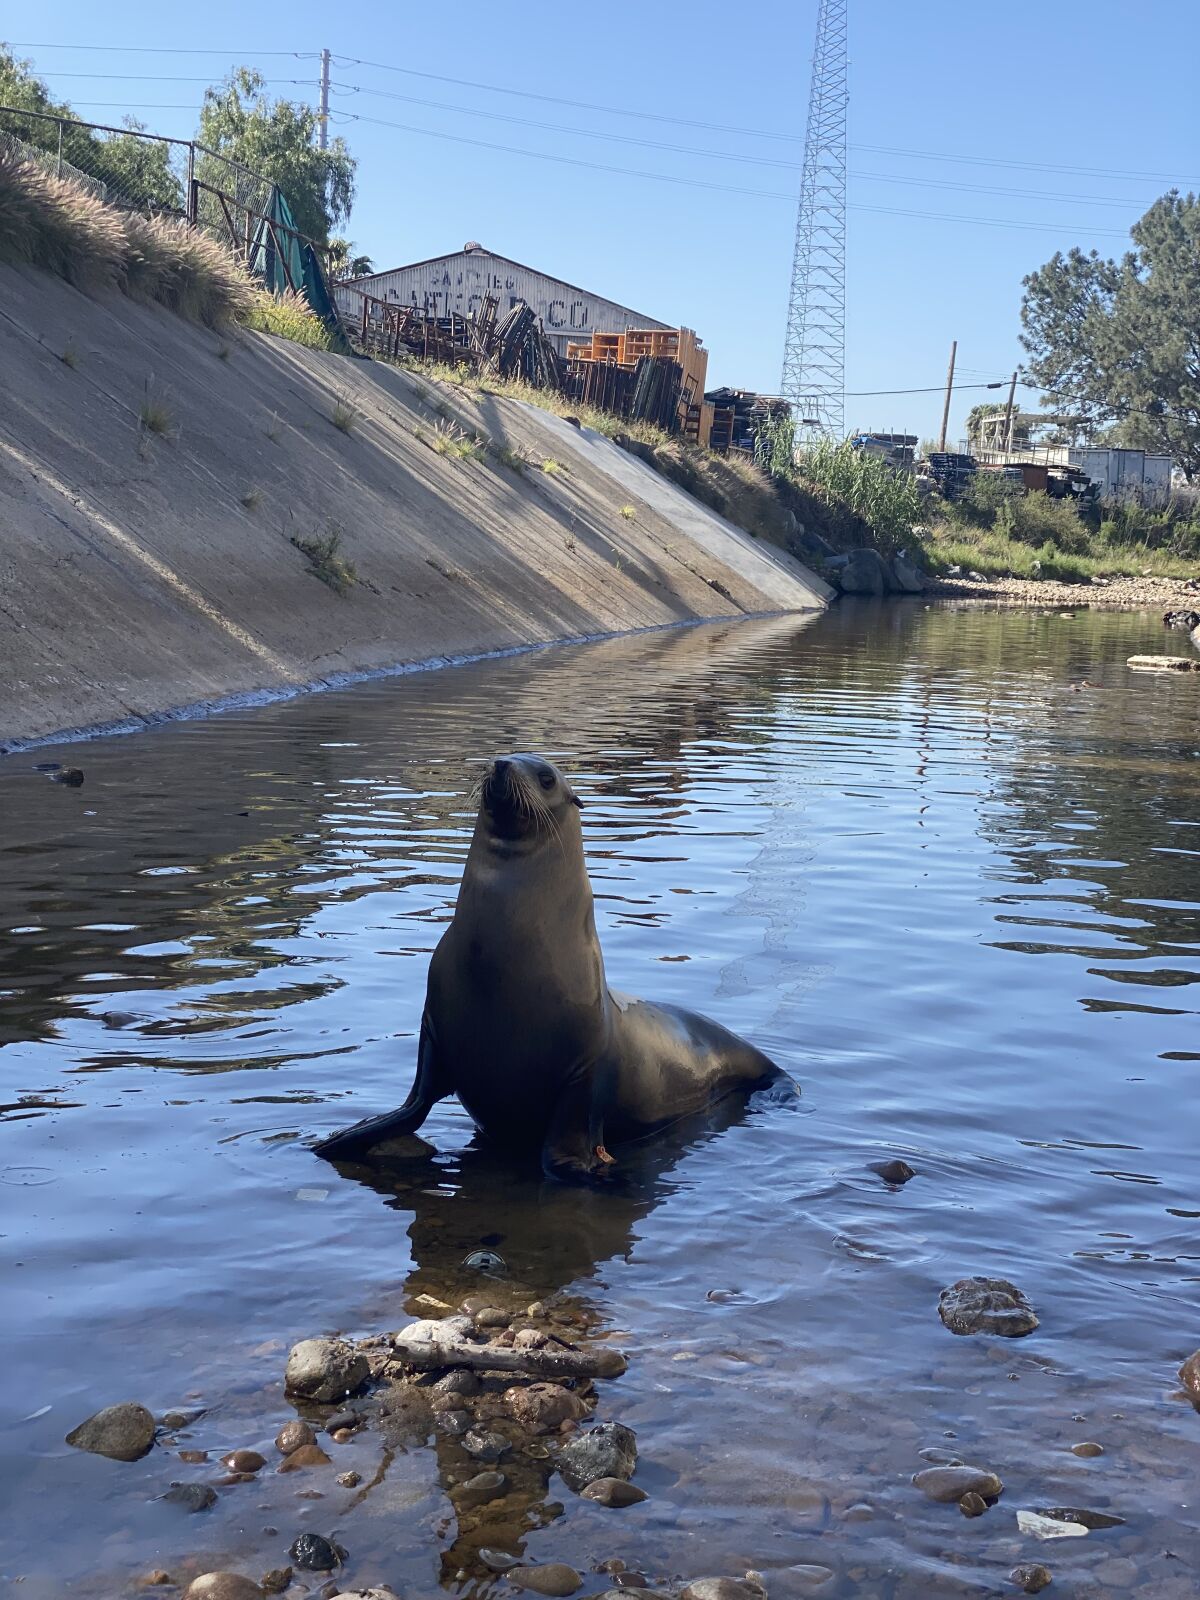 Sea lion dubbed "Freeway" went into a San Diego storm drain April 7